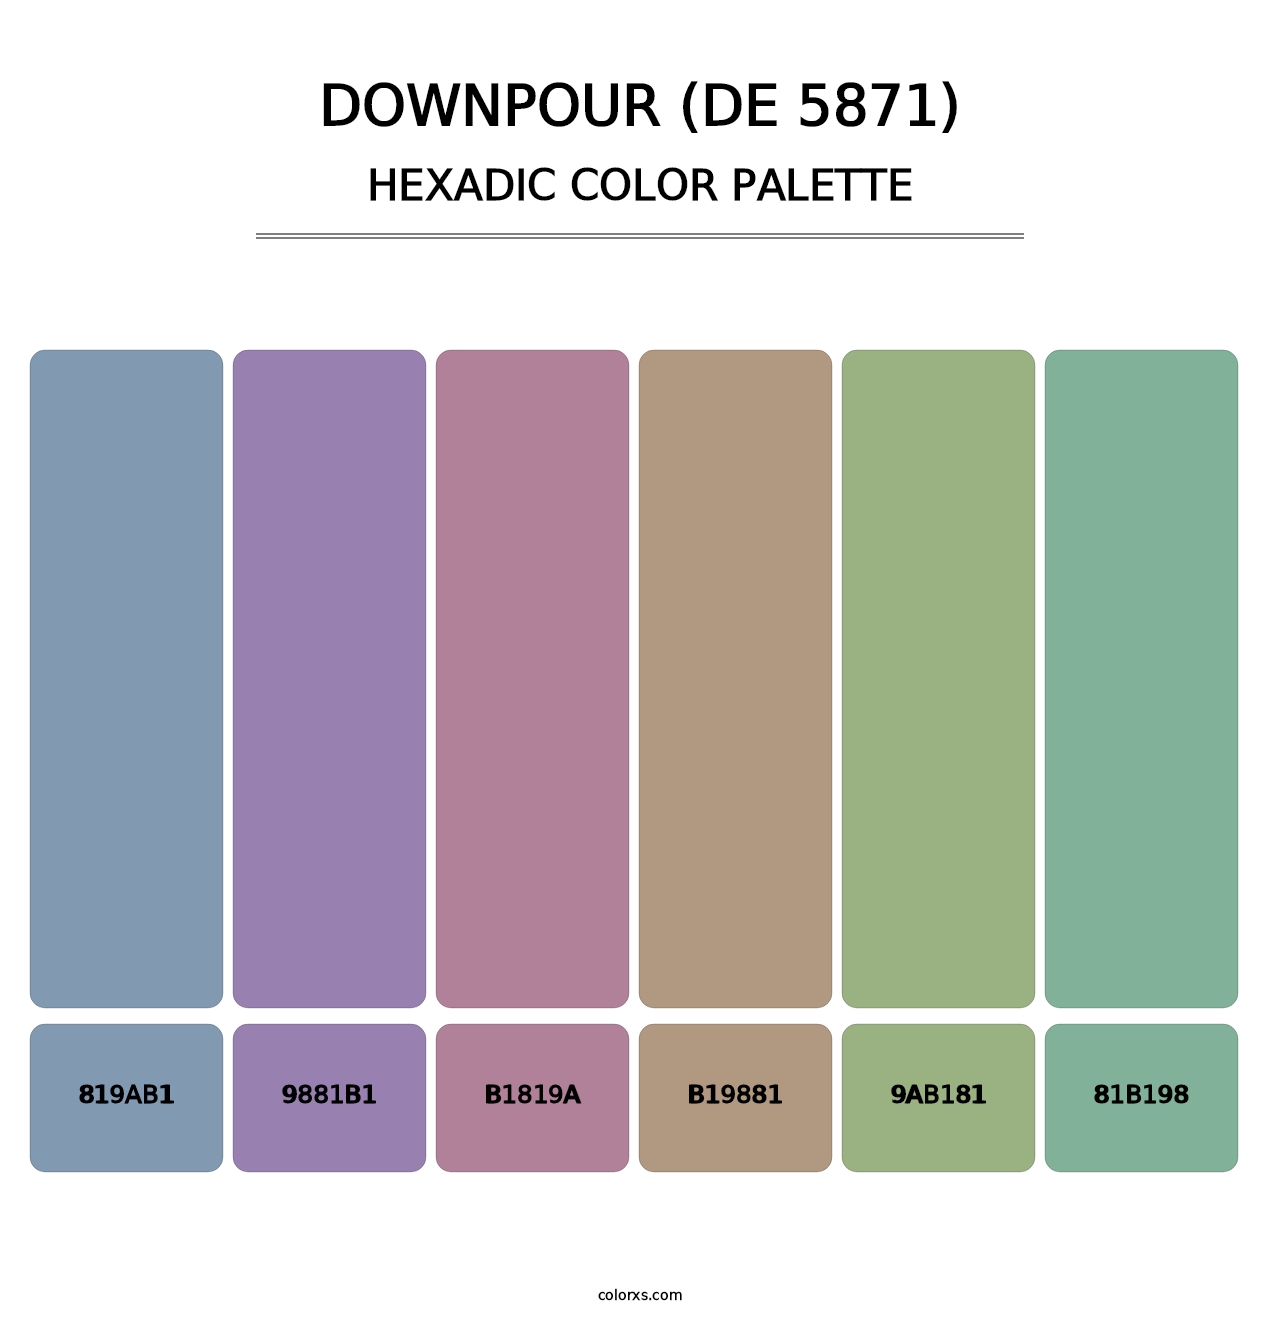 Downpour (DE 5871) - Hexadic Color Palette